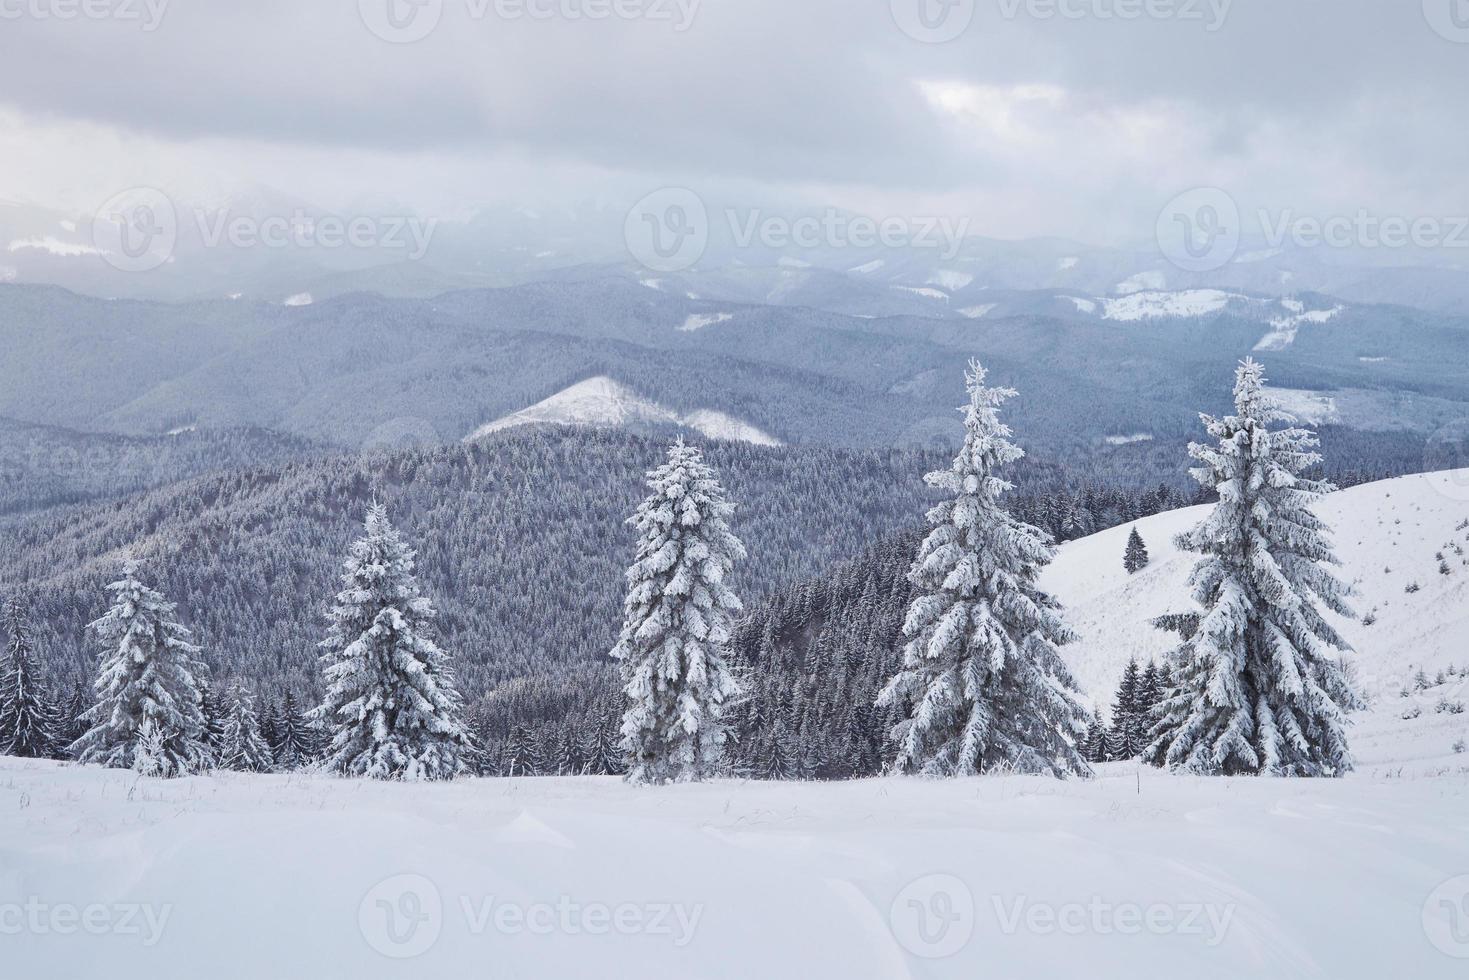 gran foto de invierno en las montañas de los Cárpatos con abetos cubiertos de nieve. colorida escena al aire libre, concepto de celebración de feliz año nuevo. foto post-procesada de estilo artístico